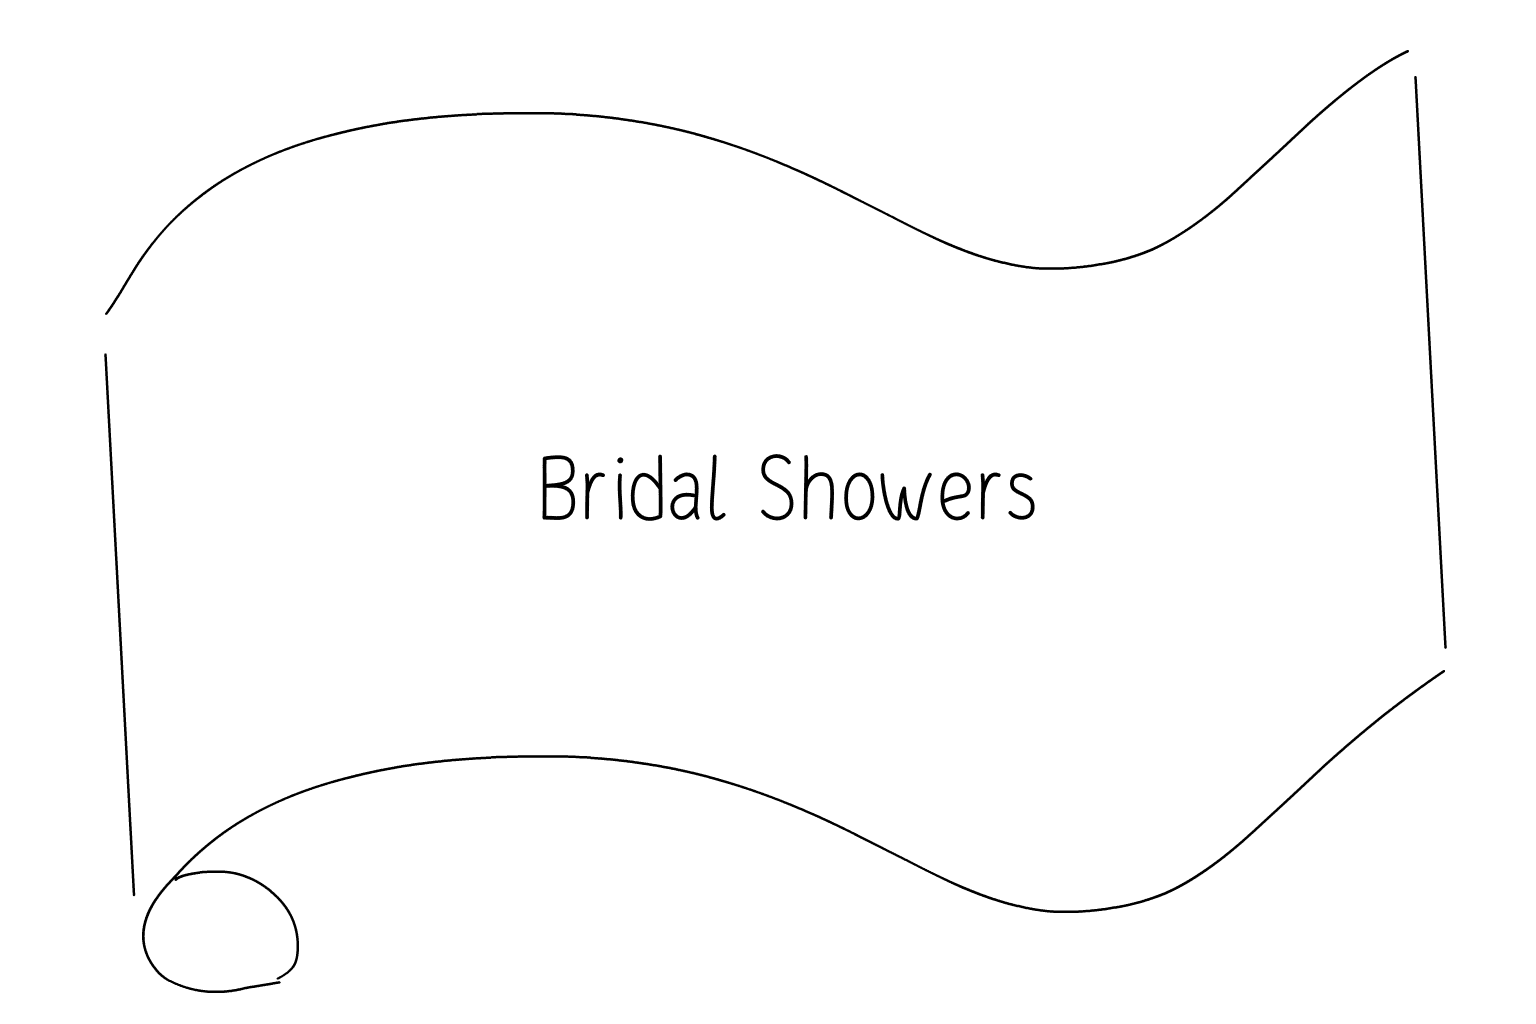 Illustrazione di matrimonio e doccia nuziale